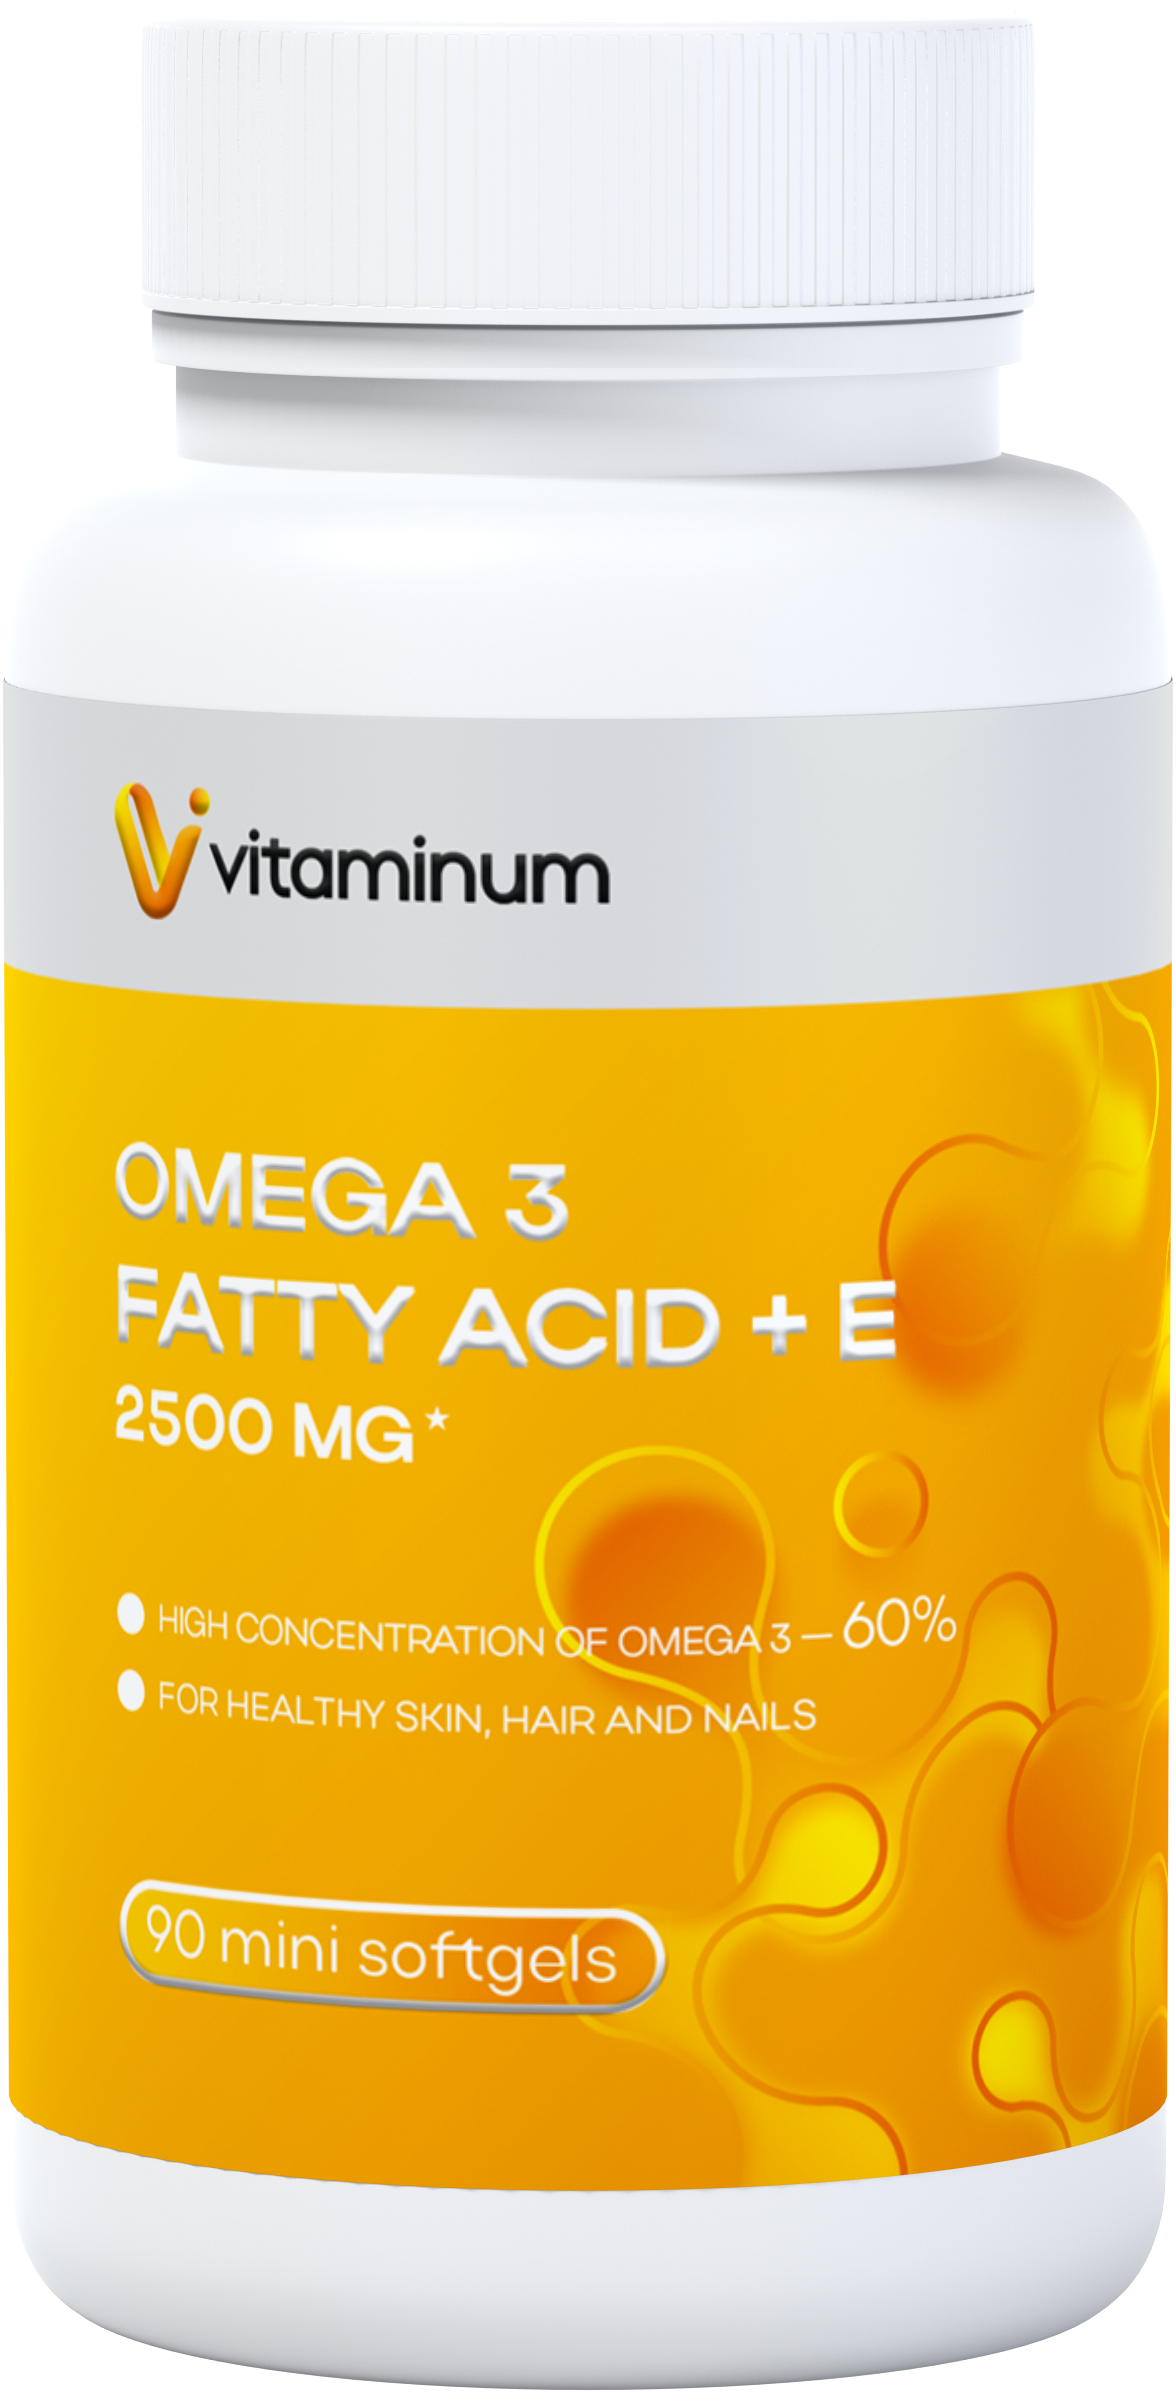  Vitaminum ОМЕГА 3 60% + витамин Е (2500 MG*) 90 капсул 700 мг   в Пятигорске